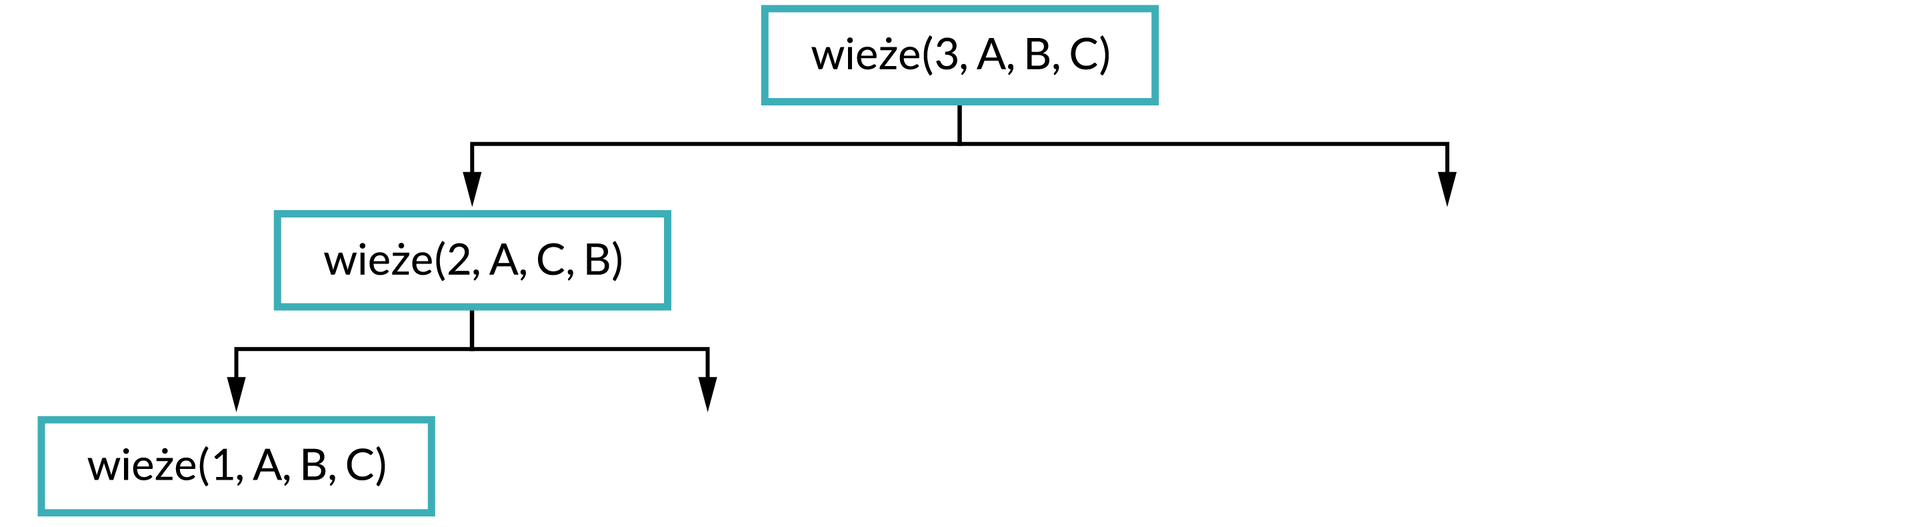 Ilustracja przedstawia schemat. Na górze schematu w prostokątnej ramce jest napis: wieże(3, A, B, C). Od ramki dwie strzałki w dół, pod strzałką po lewej stronie zapis w ramce: wieże(2, A, C, B). Od ramki dwie strzałki w dół, pod strzałką po lewej stronie zapis w ramce: wieże(1, A, B, C).  